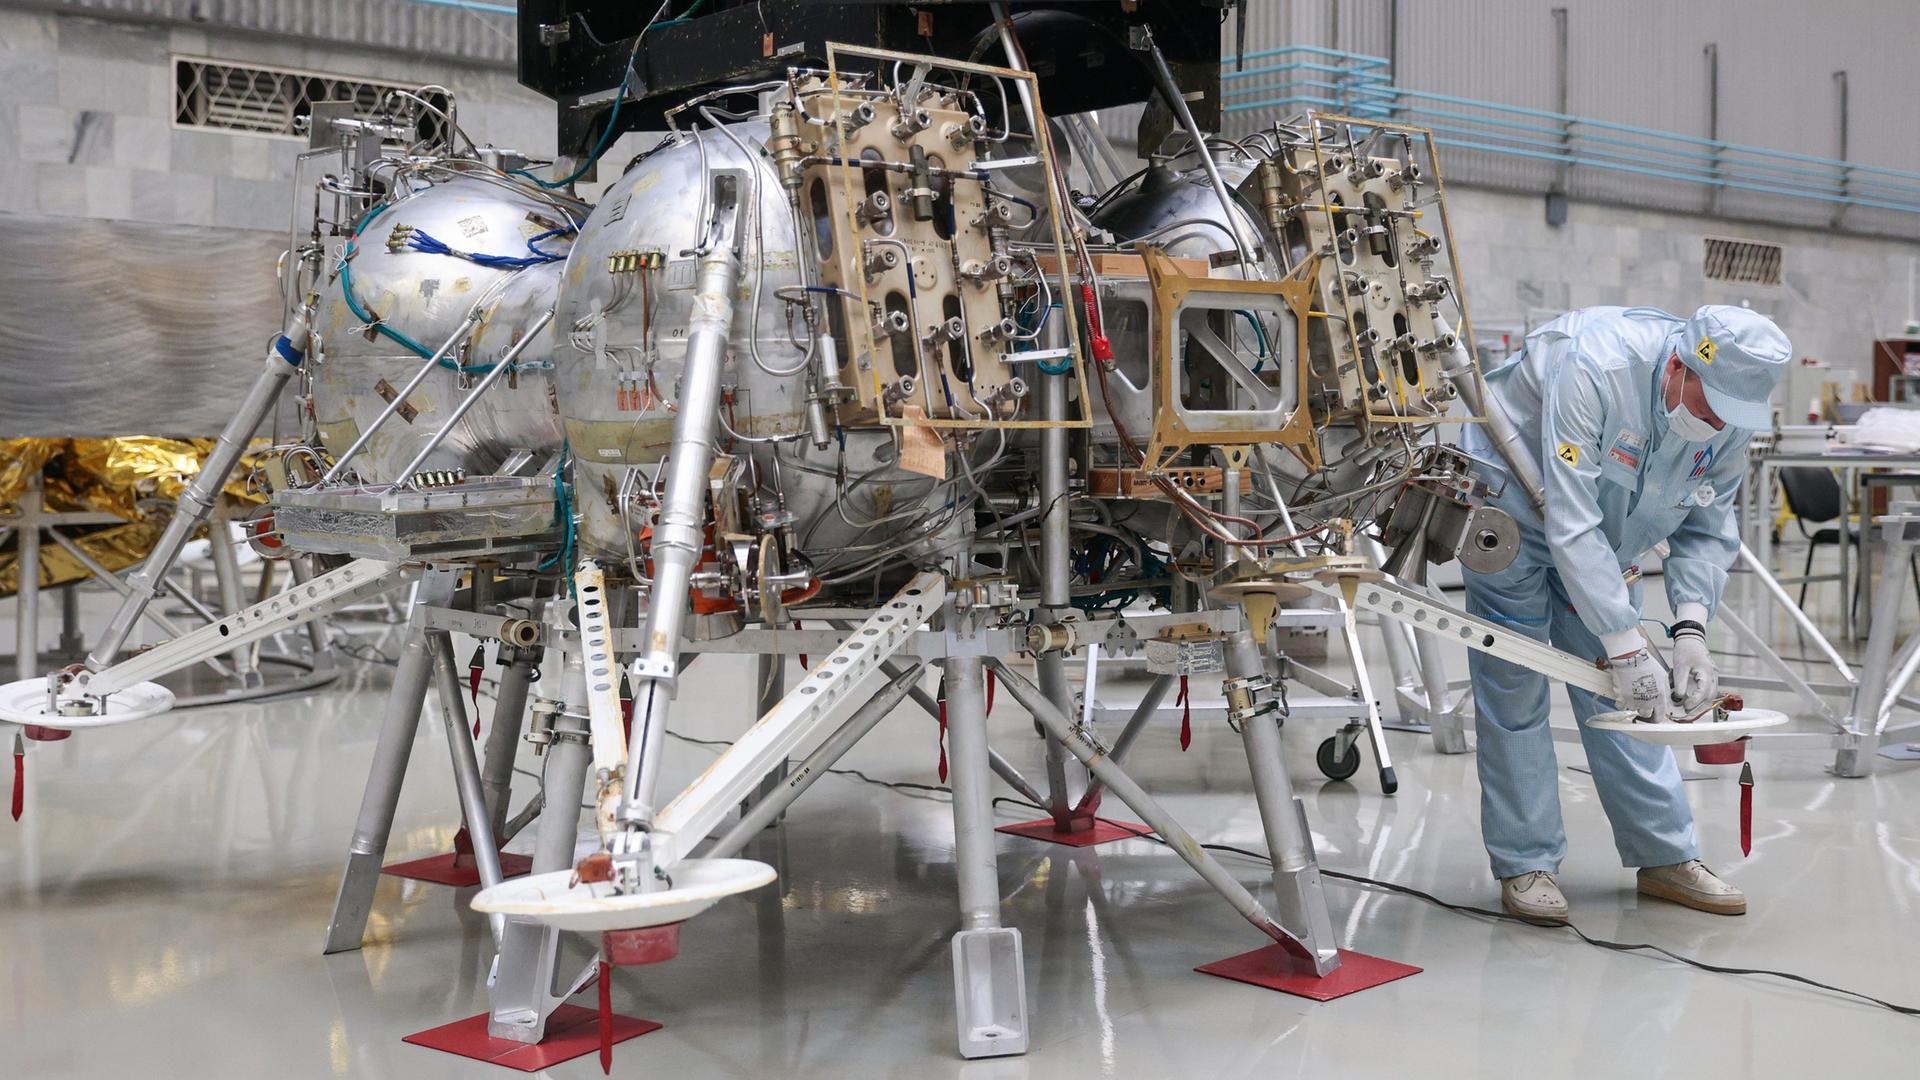 Ein Angestellter der S.A. Lawotschkin Forschungs- und Produktionsvereinigung, einem russischen Luft- und Raumfahrtunternehmen, arbeitet an der Luna-25-Mondlandefähre.